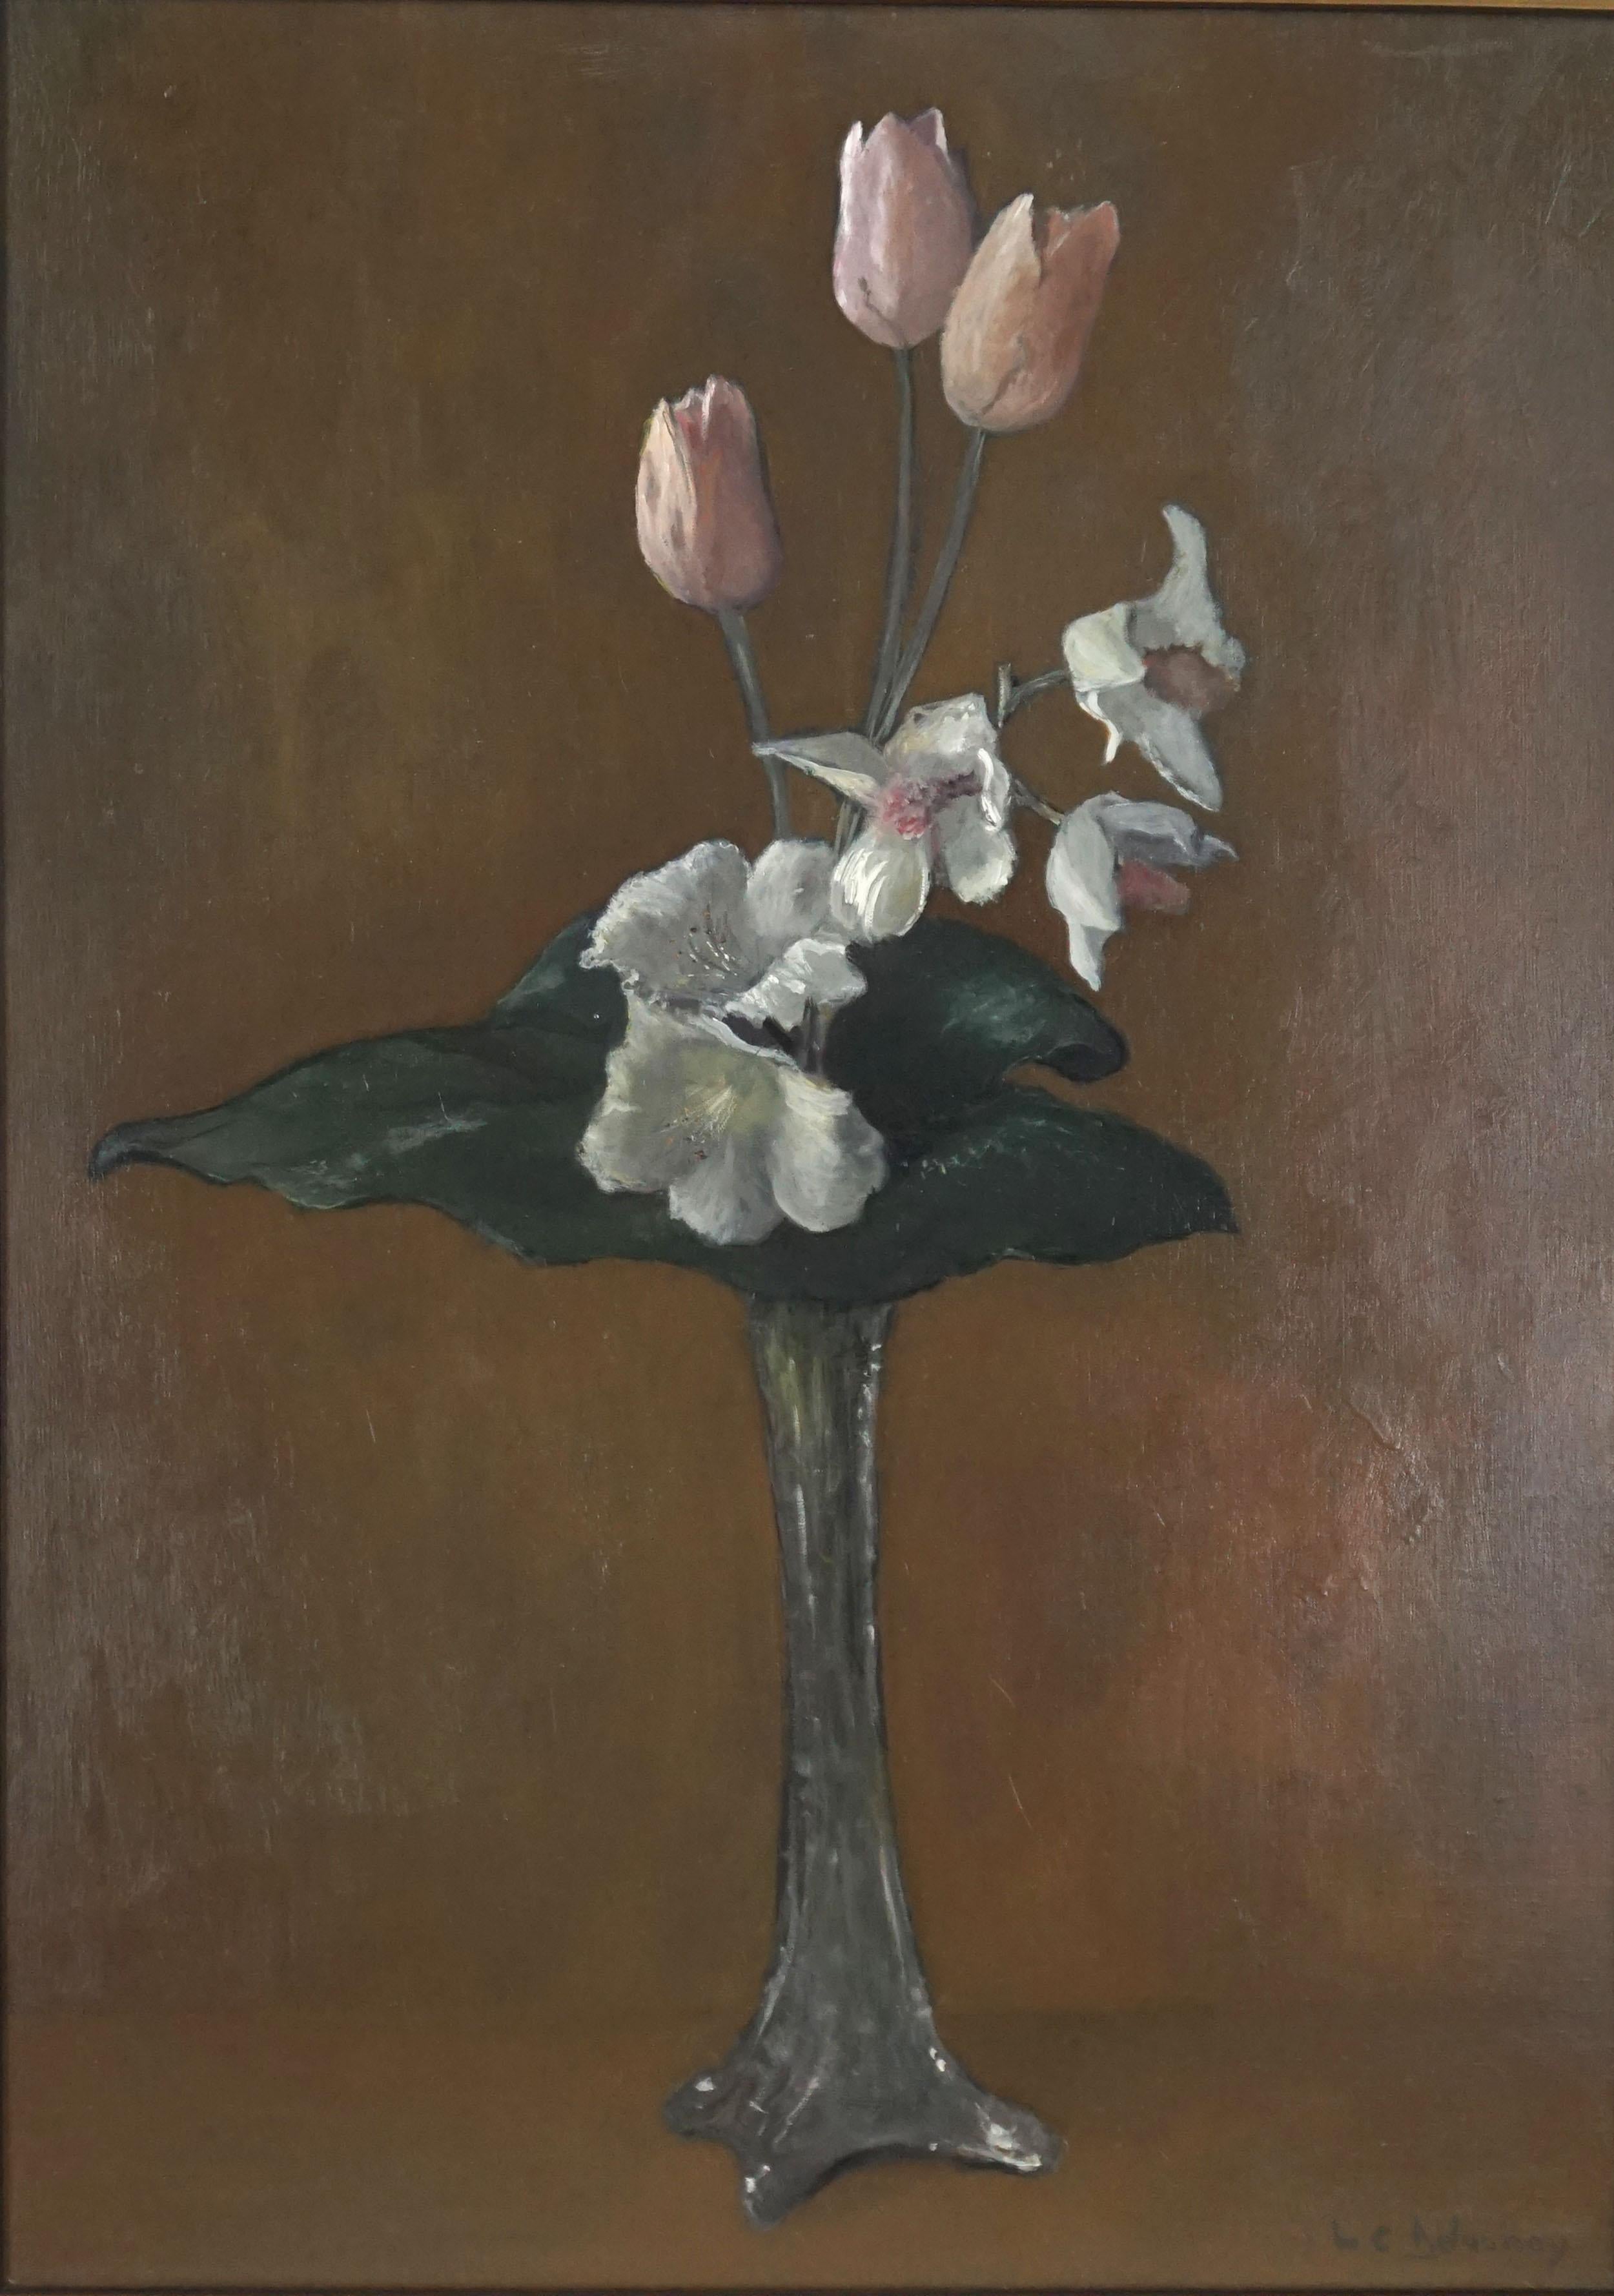 Nature morte française à grande échelle de tulipes, d'acanthe et d'orchidées - Painting de Marie-Claire Delaunay